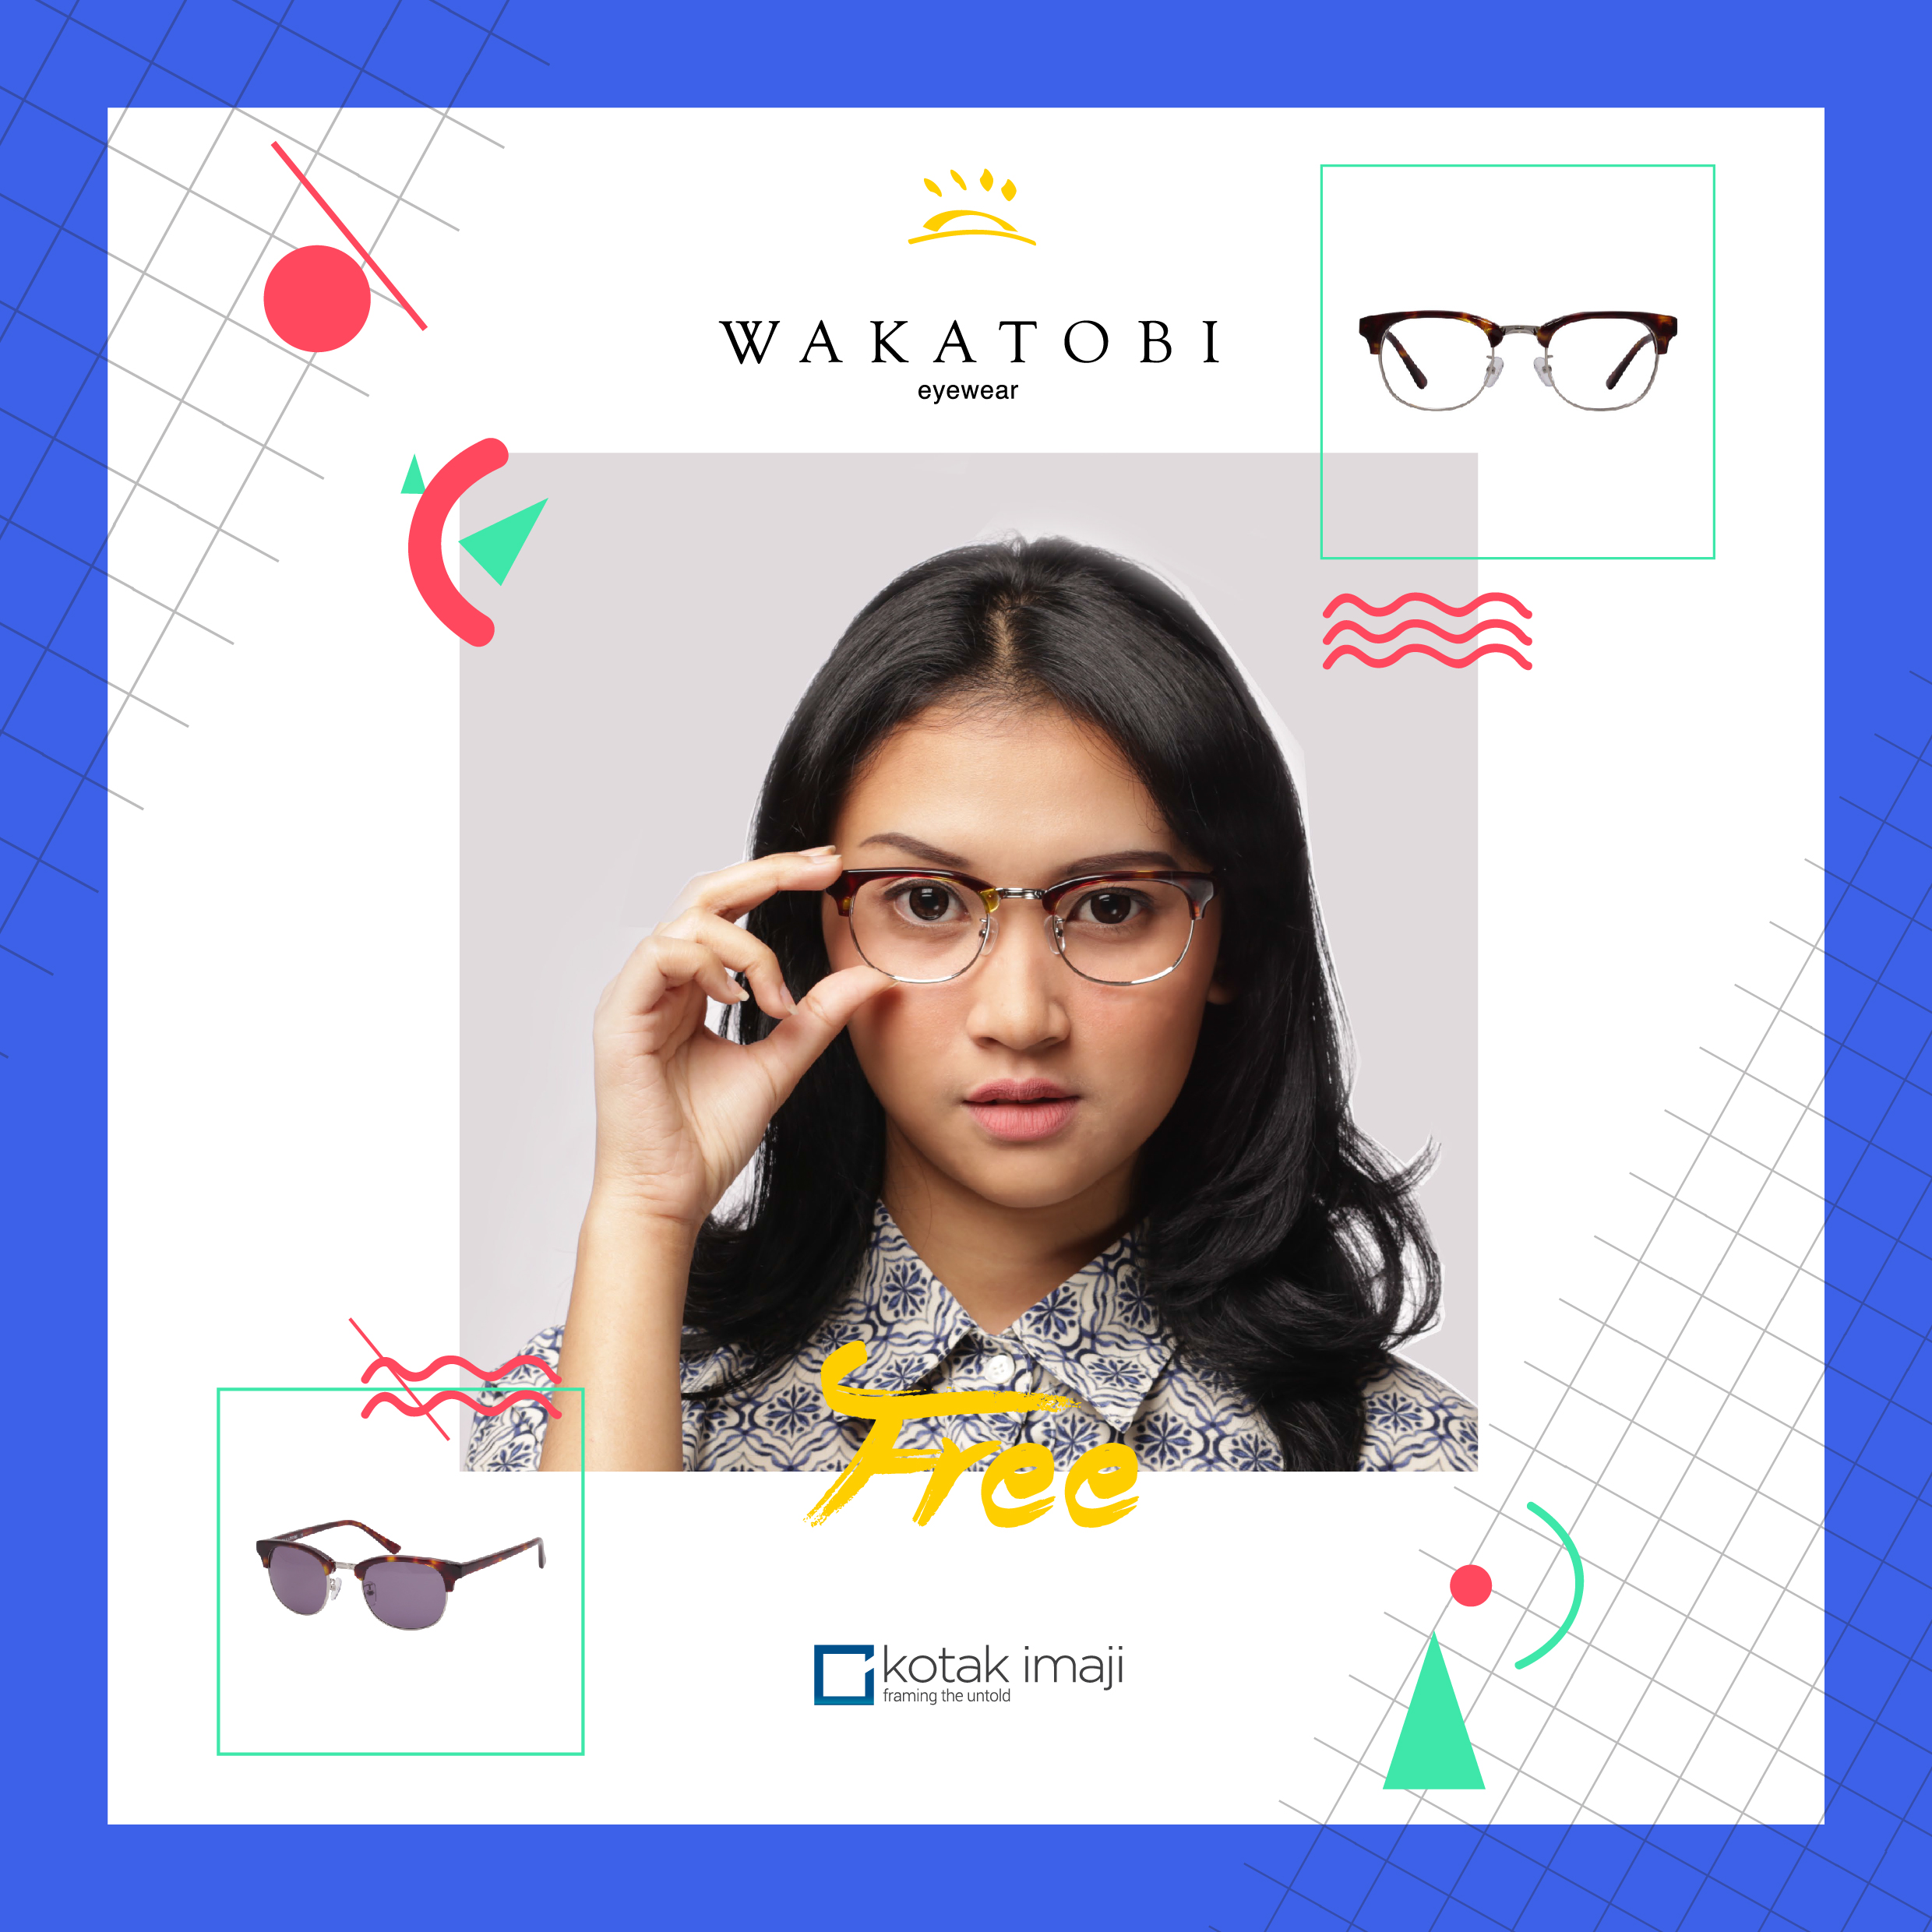 Join Our Photo & Quote Challenge to Win Wakatobi Eyewear!